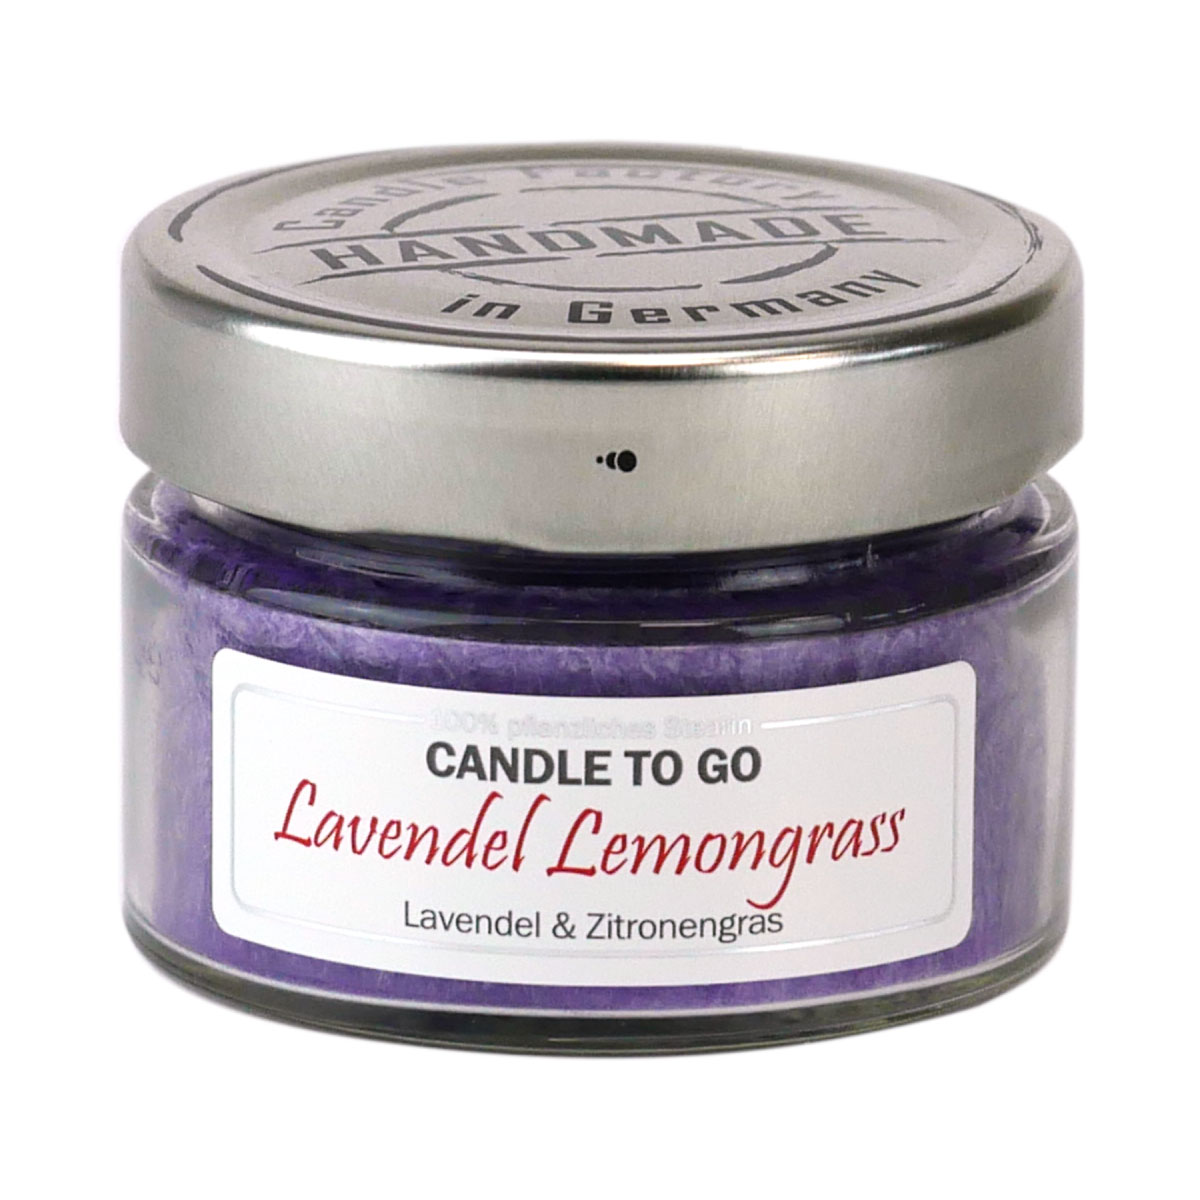 Lavendel Lemongrass - Candle to Go die Duftkerze für unterwegs